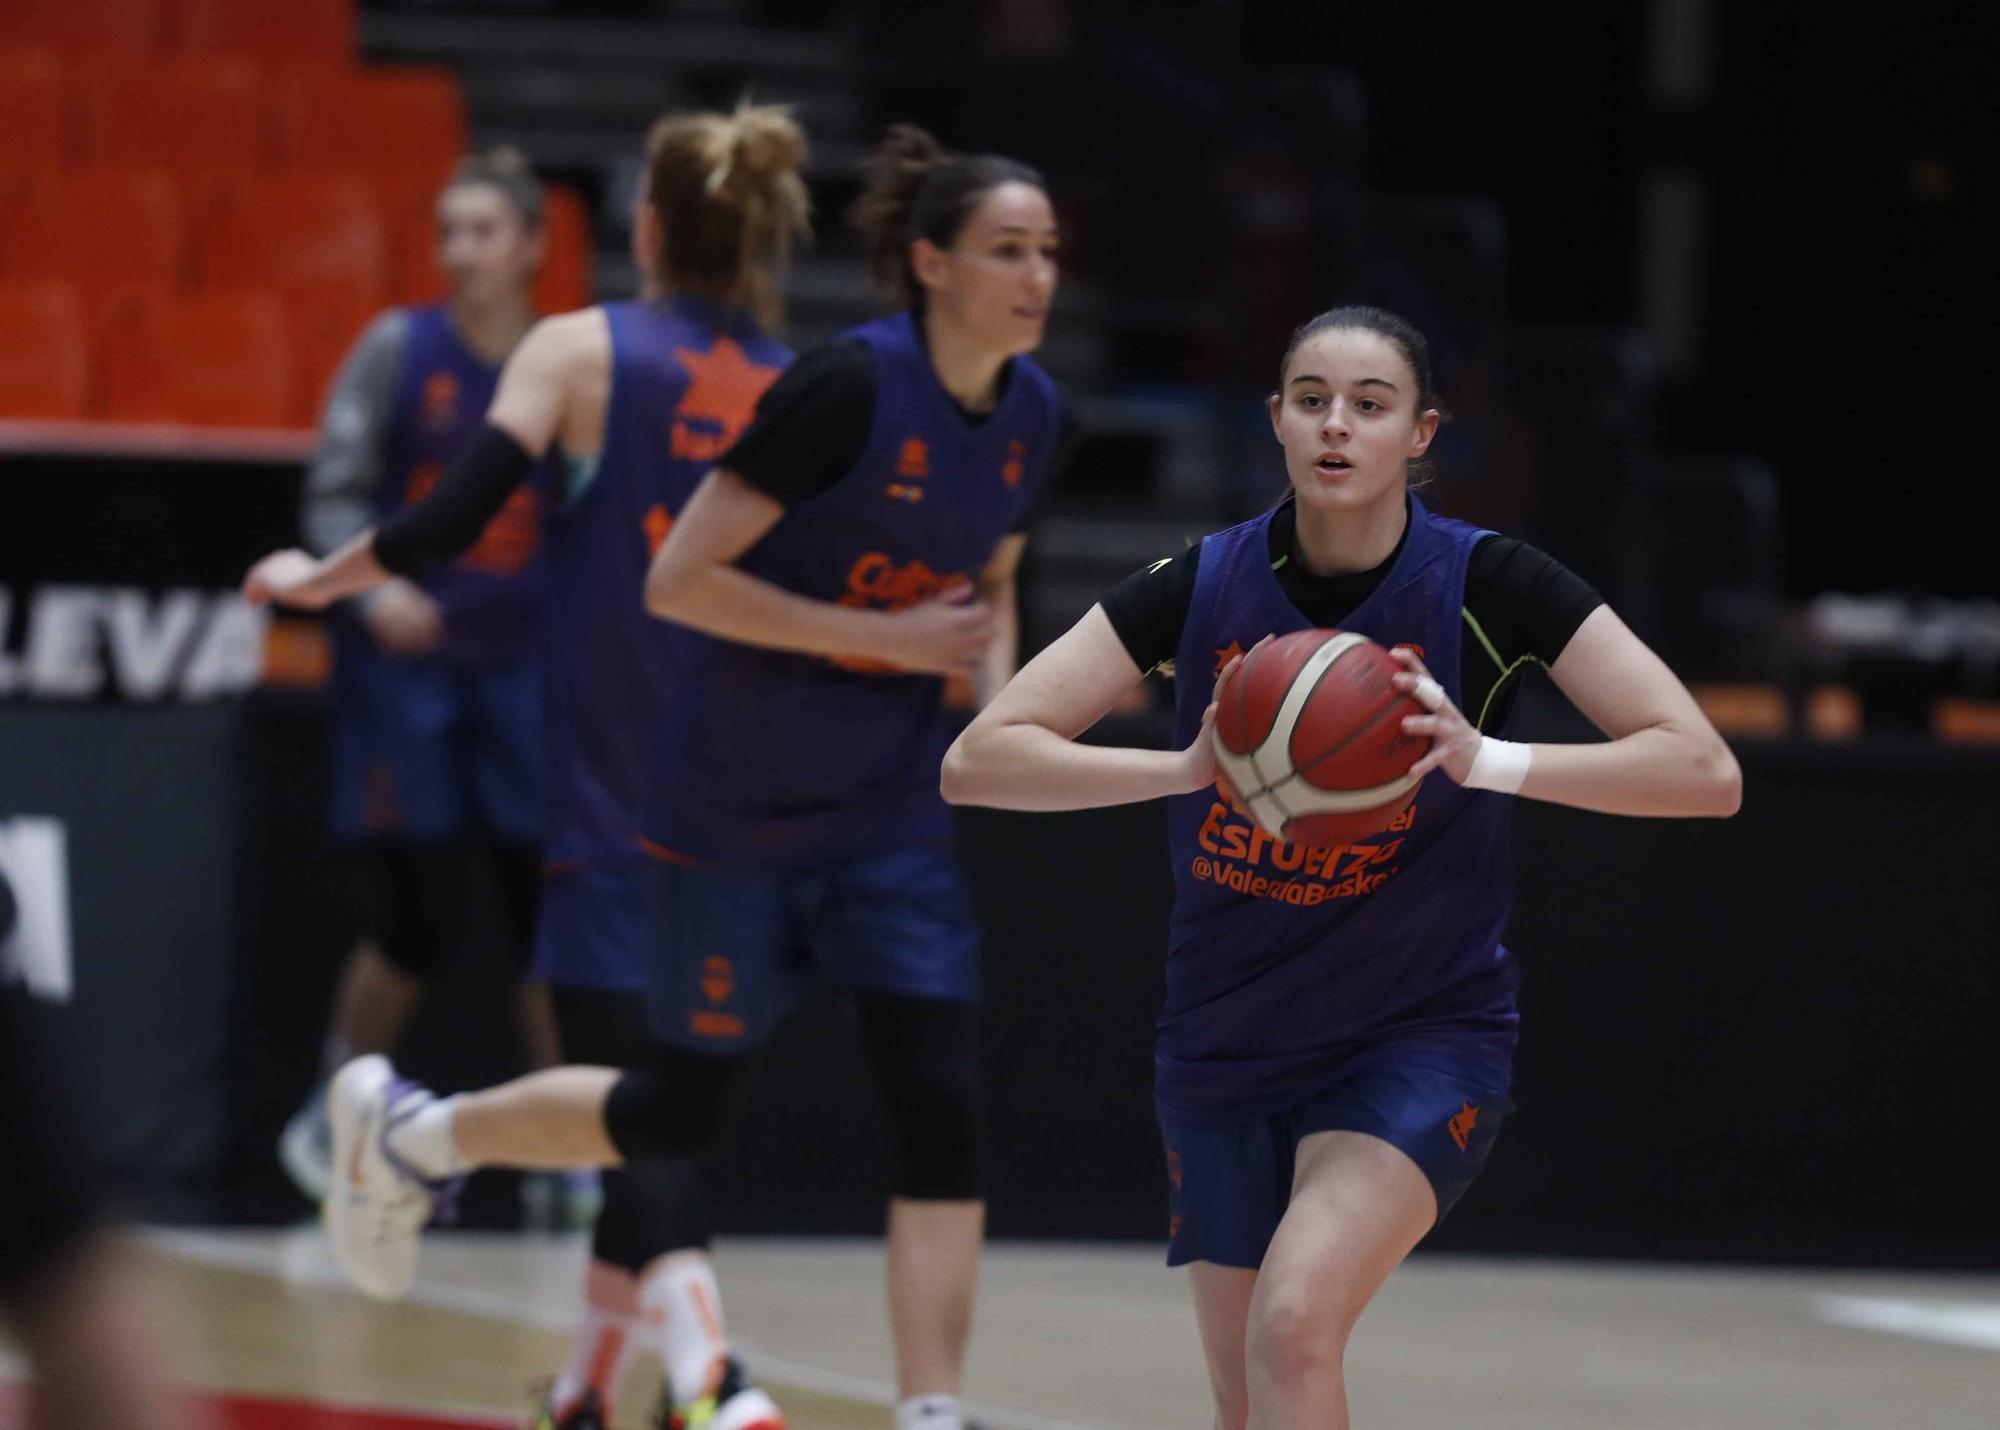 Último entrenamiento de Valencia Basket antes del partido de Eurocup Women frente al Fuenlabrada